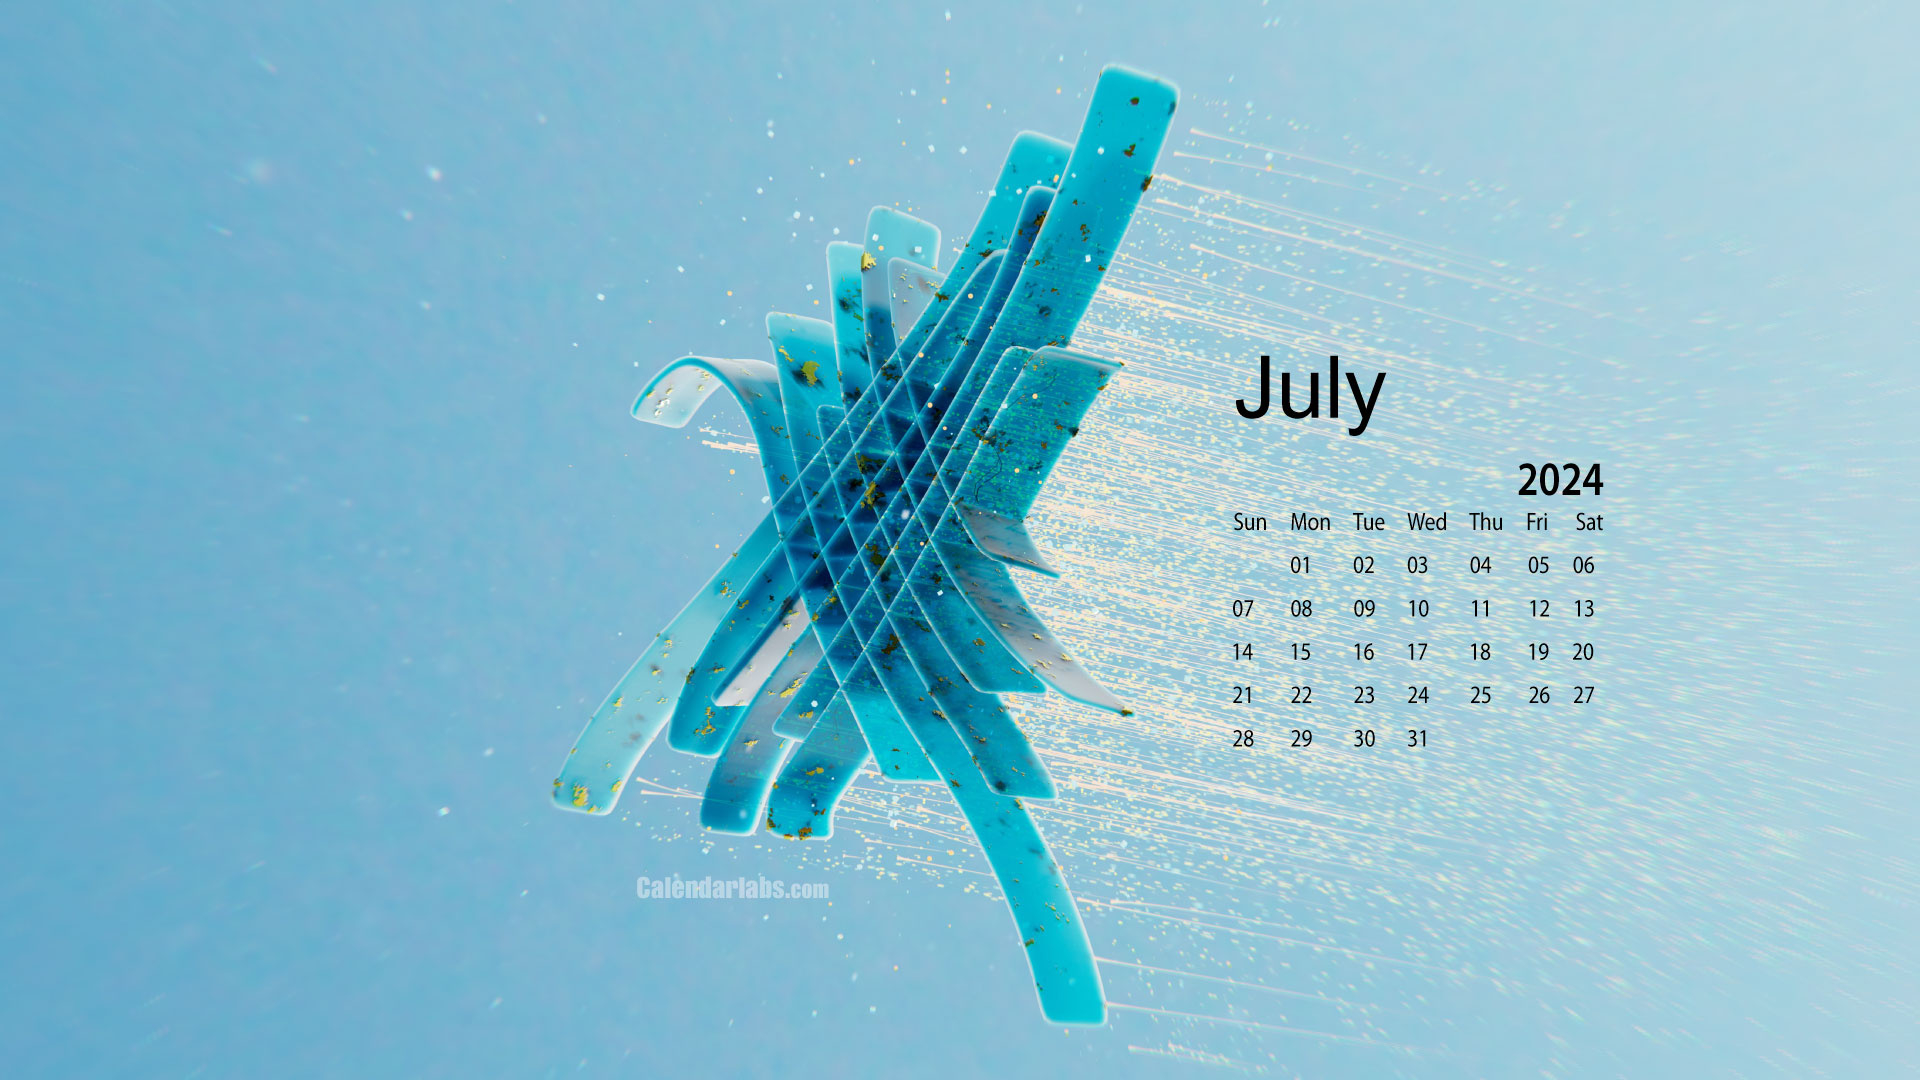 July 2024 Desktop Wallpaper Calendar - Calendarlabs within July Calendar 2024 Wallpaper